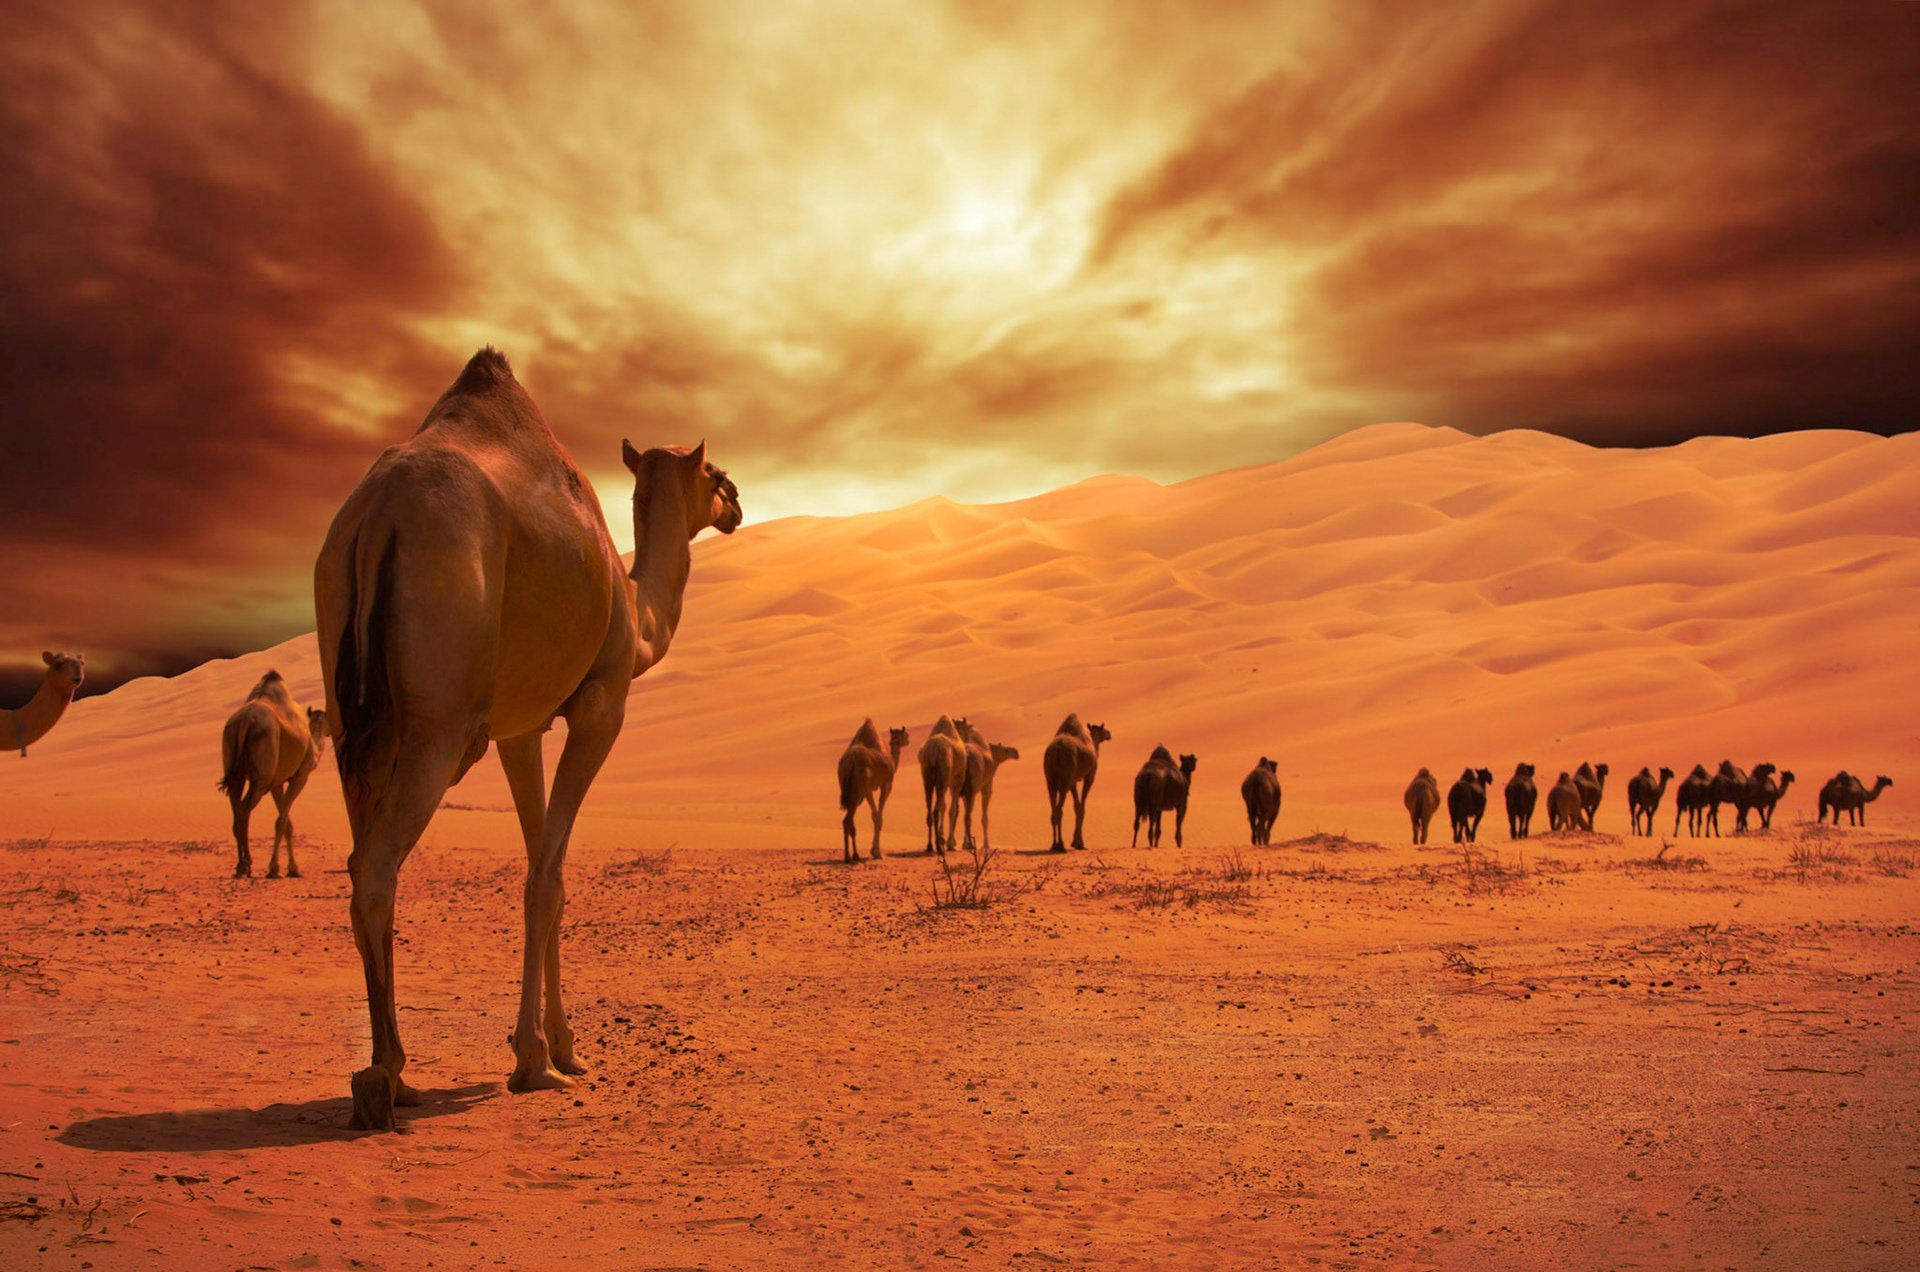 Там караван. Караван бактрианов. Абу Даби верблюд. Караван с верблюдами в пустыне. Пустыня Тенере.